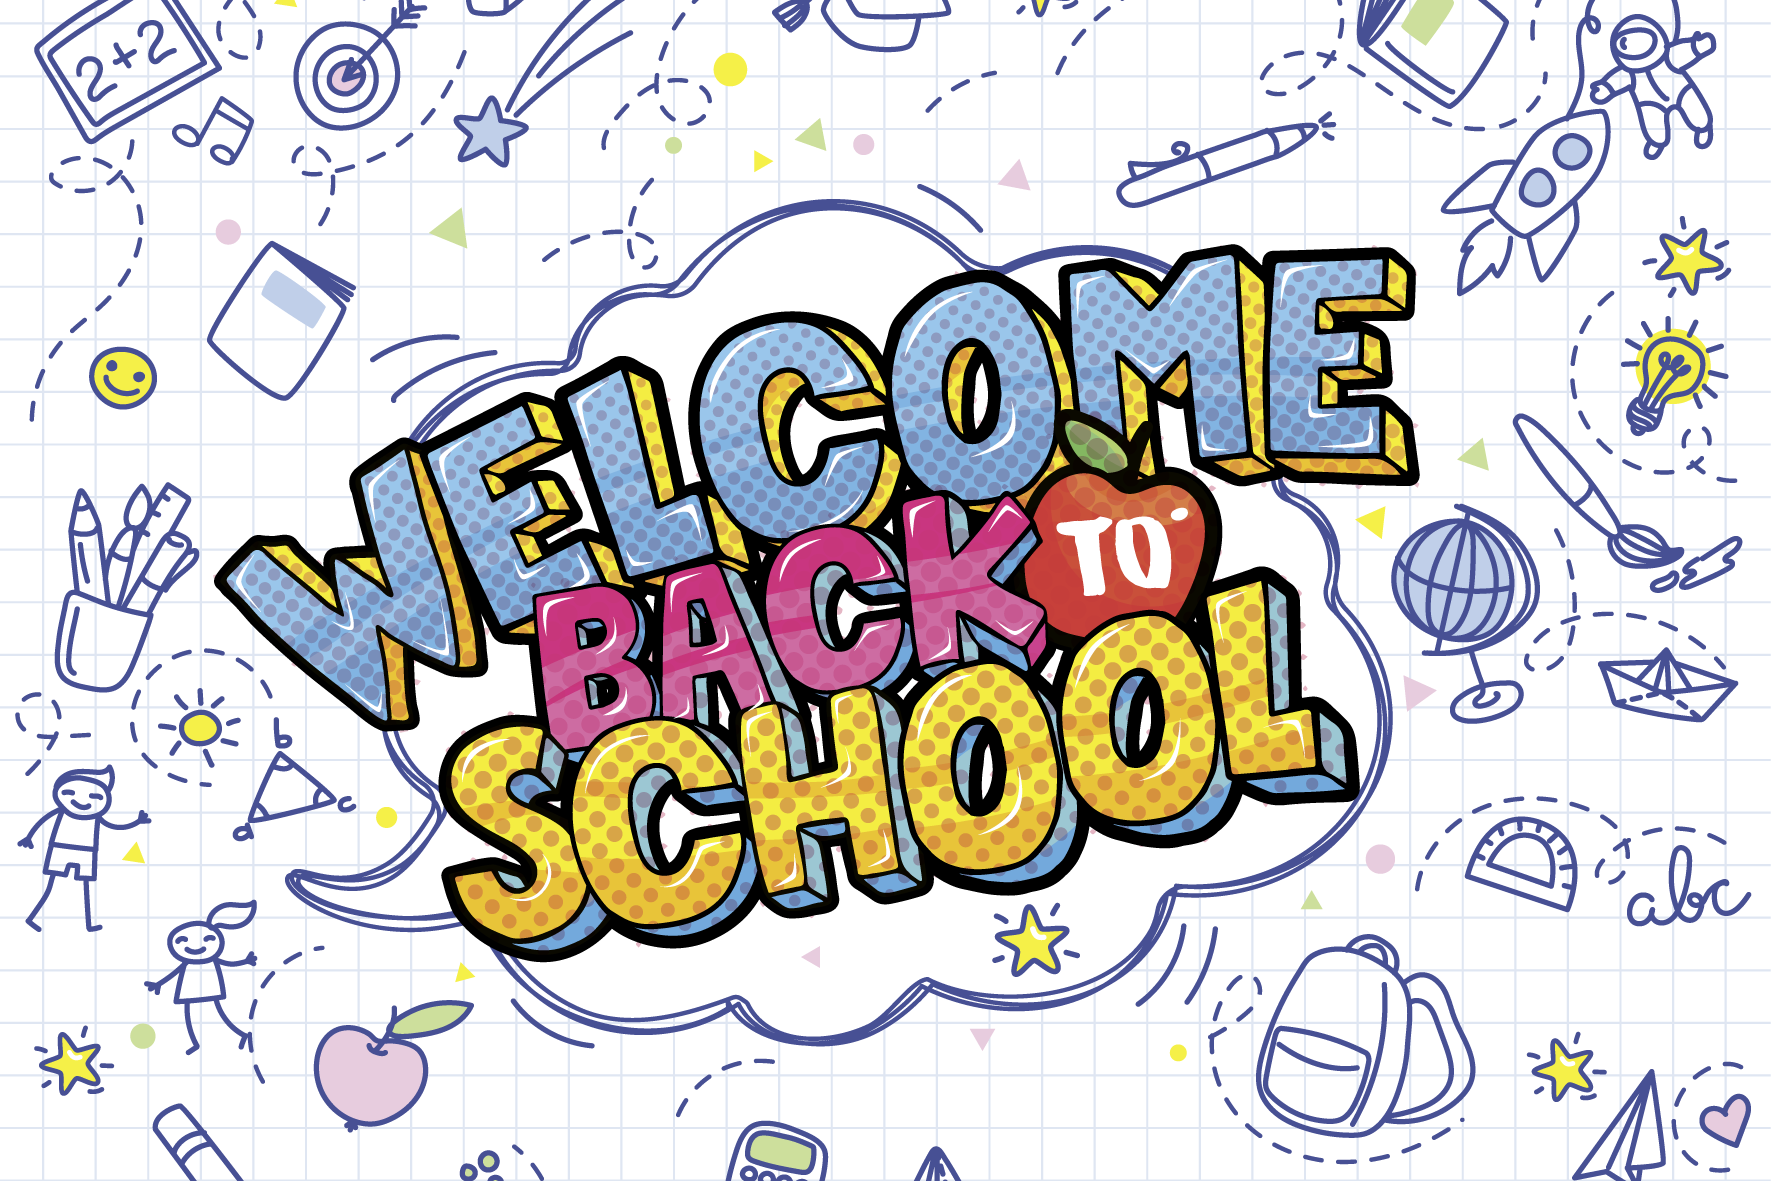 Text "Welcome Back to School" in buntem Comic-Stil, während der Bildhintergrund aus kariertem Papier besteht, worauf verschiedene Figuren, Symbole und Schulgegenstände gezeichnet sind.